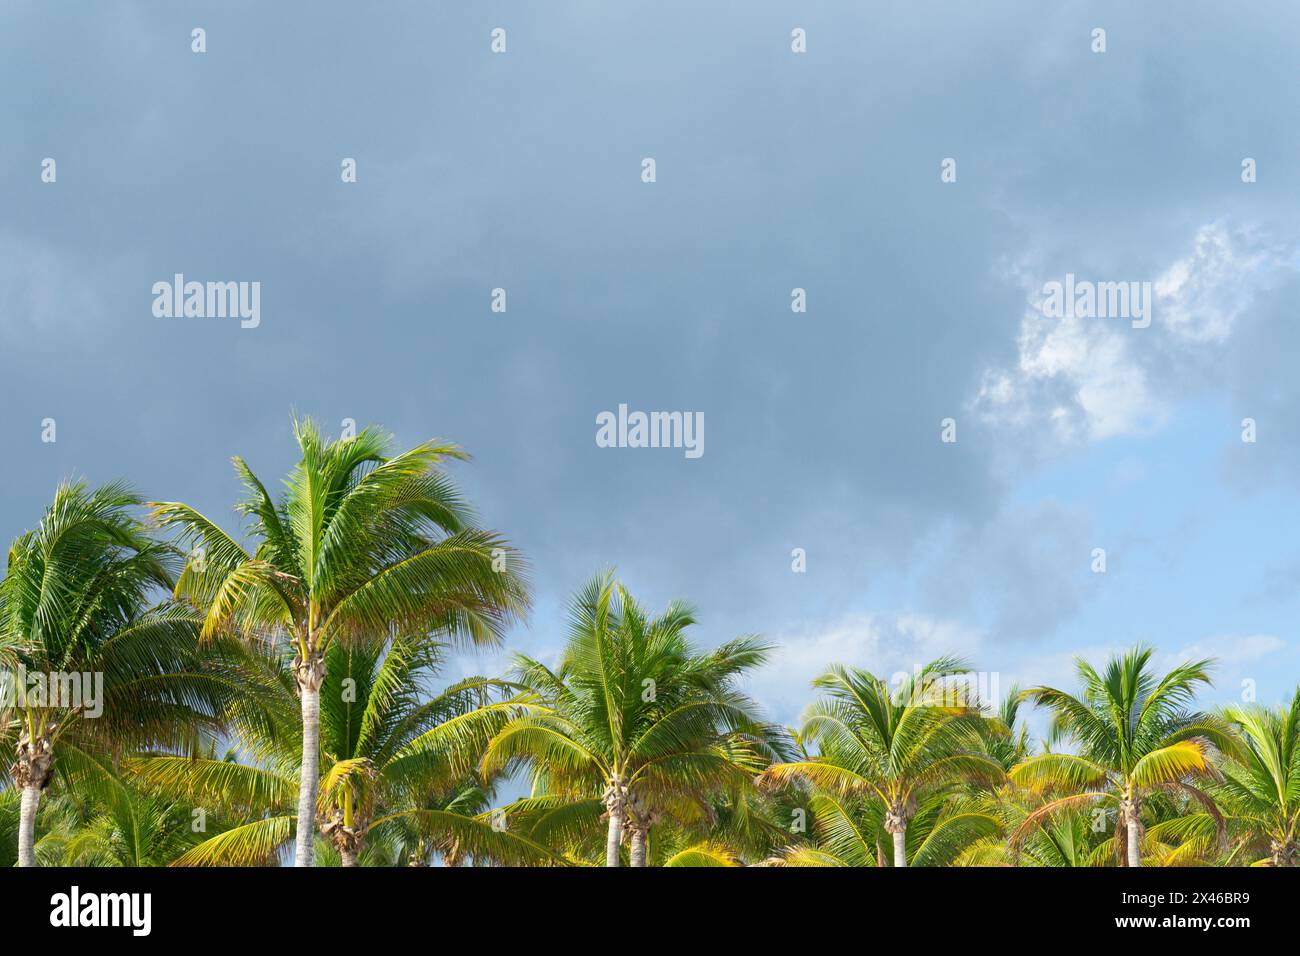 Lussureggianti palme verdi si allineano sotto un cielo nuvoloso, evocando una scena tropicale in un ambiente naturale e sereno vicino a una spiaggia caraibica in Messico Foto Stock